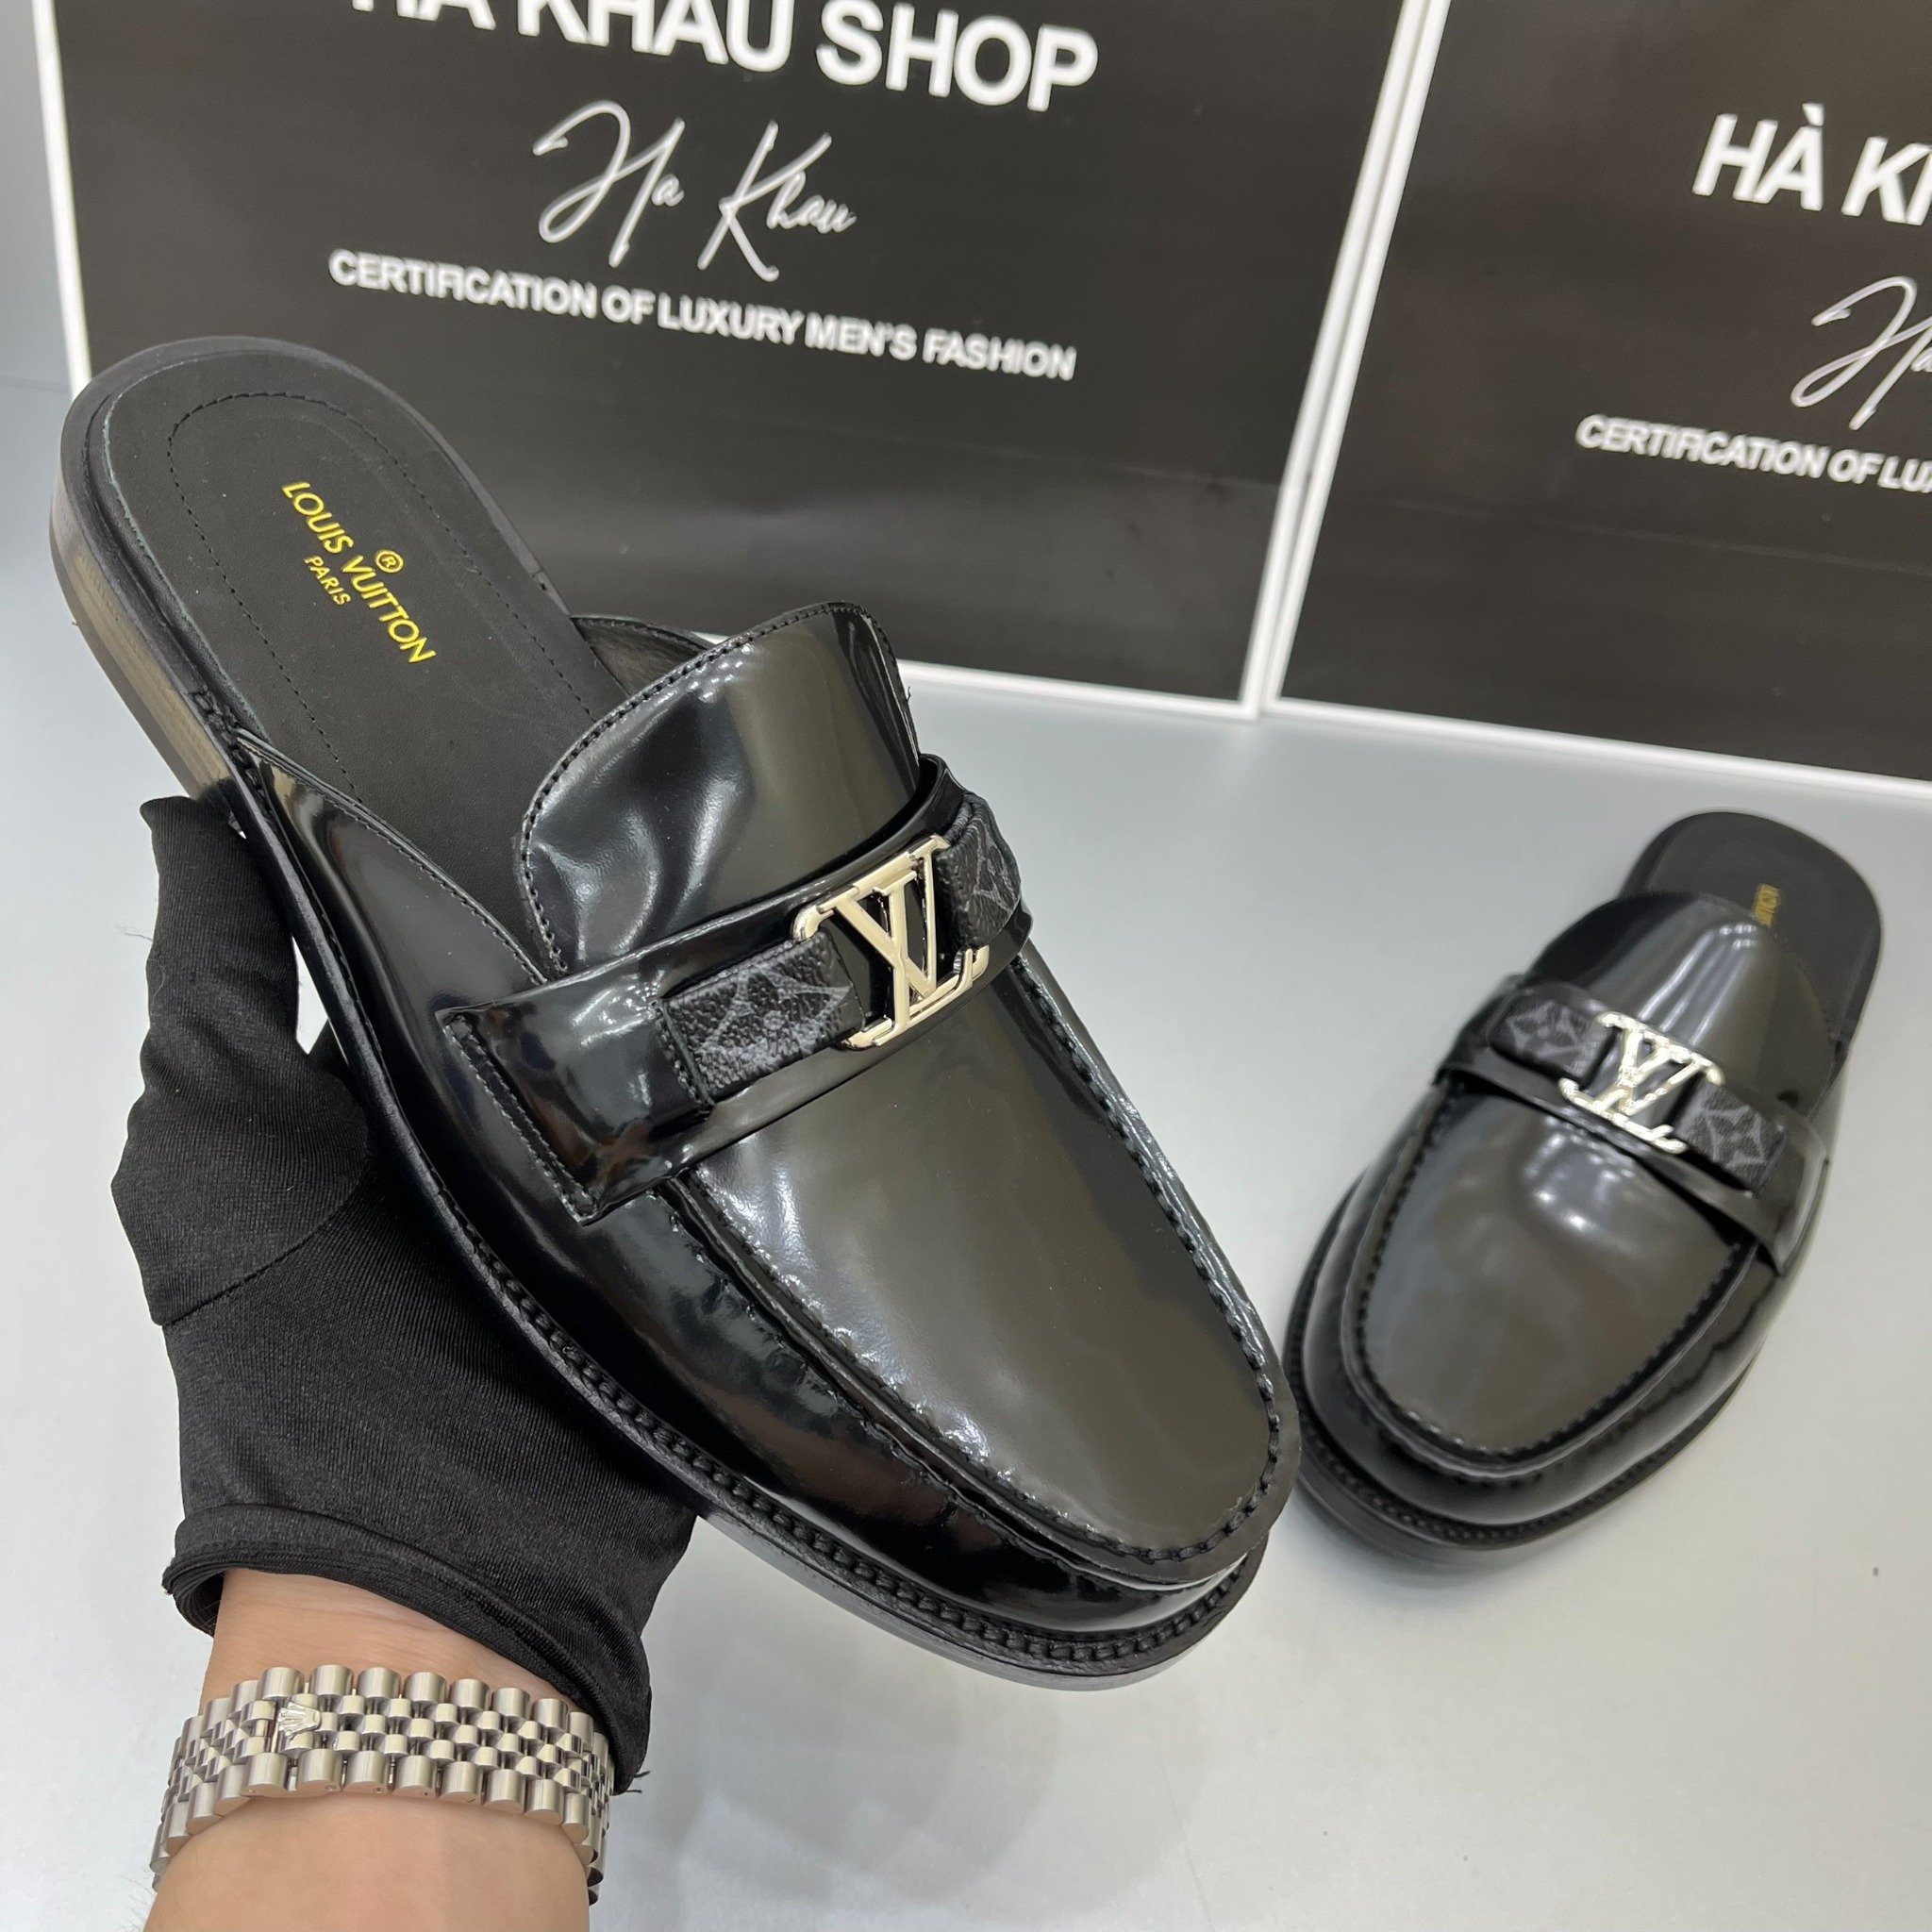 Giày Sục LV nam - Sục Loafer Louis Vuitton nam – Hà Khẩu Shop